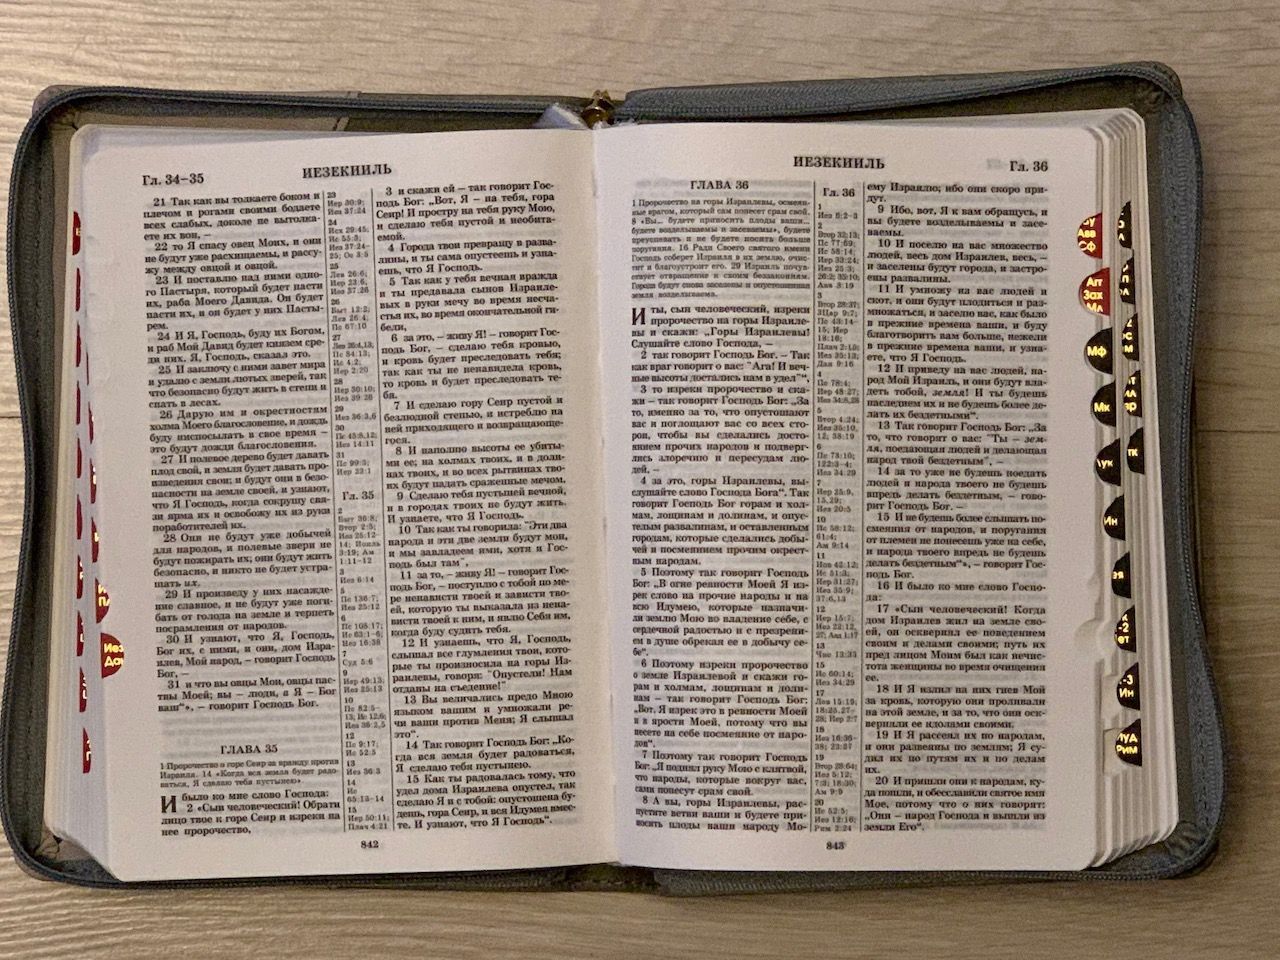 БИБЛИЯ 046DTzti формат, переплет из искусственной кожи на молнии с индексами, надпись серебром "Библия", цвет темно-серый/светло-серый полукругом, средний формат, 132*182 мм, цветные карты, шрифт 12 кегель